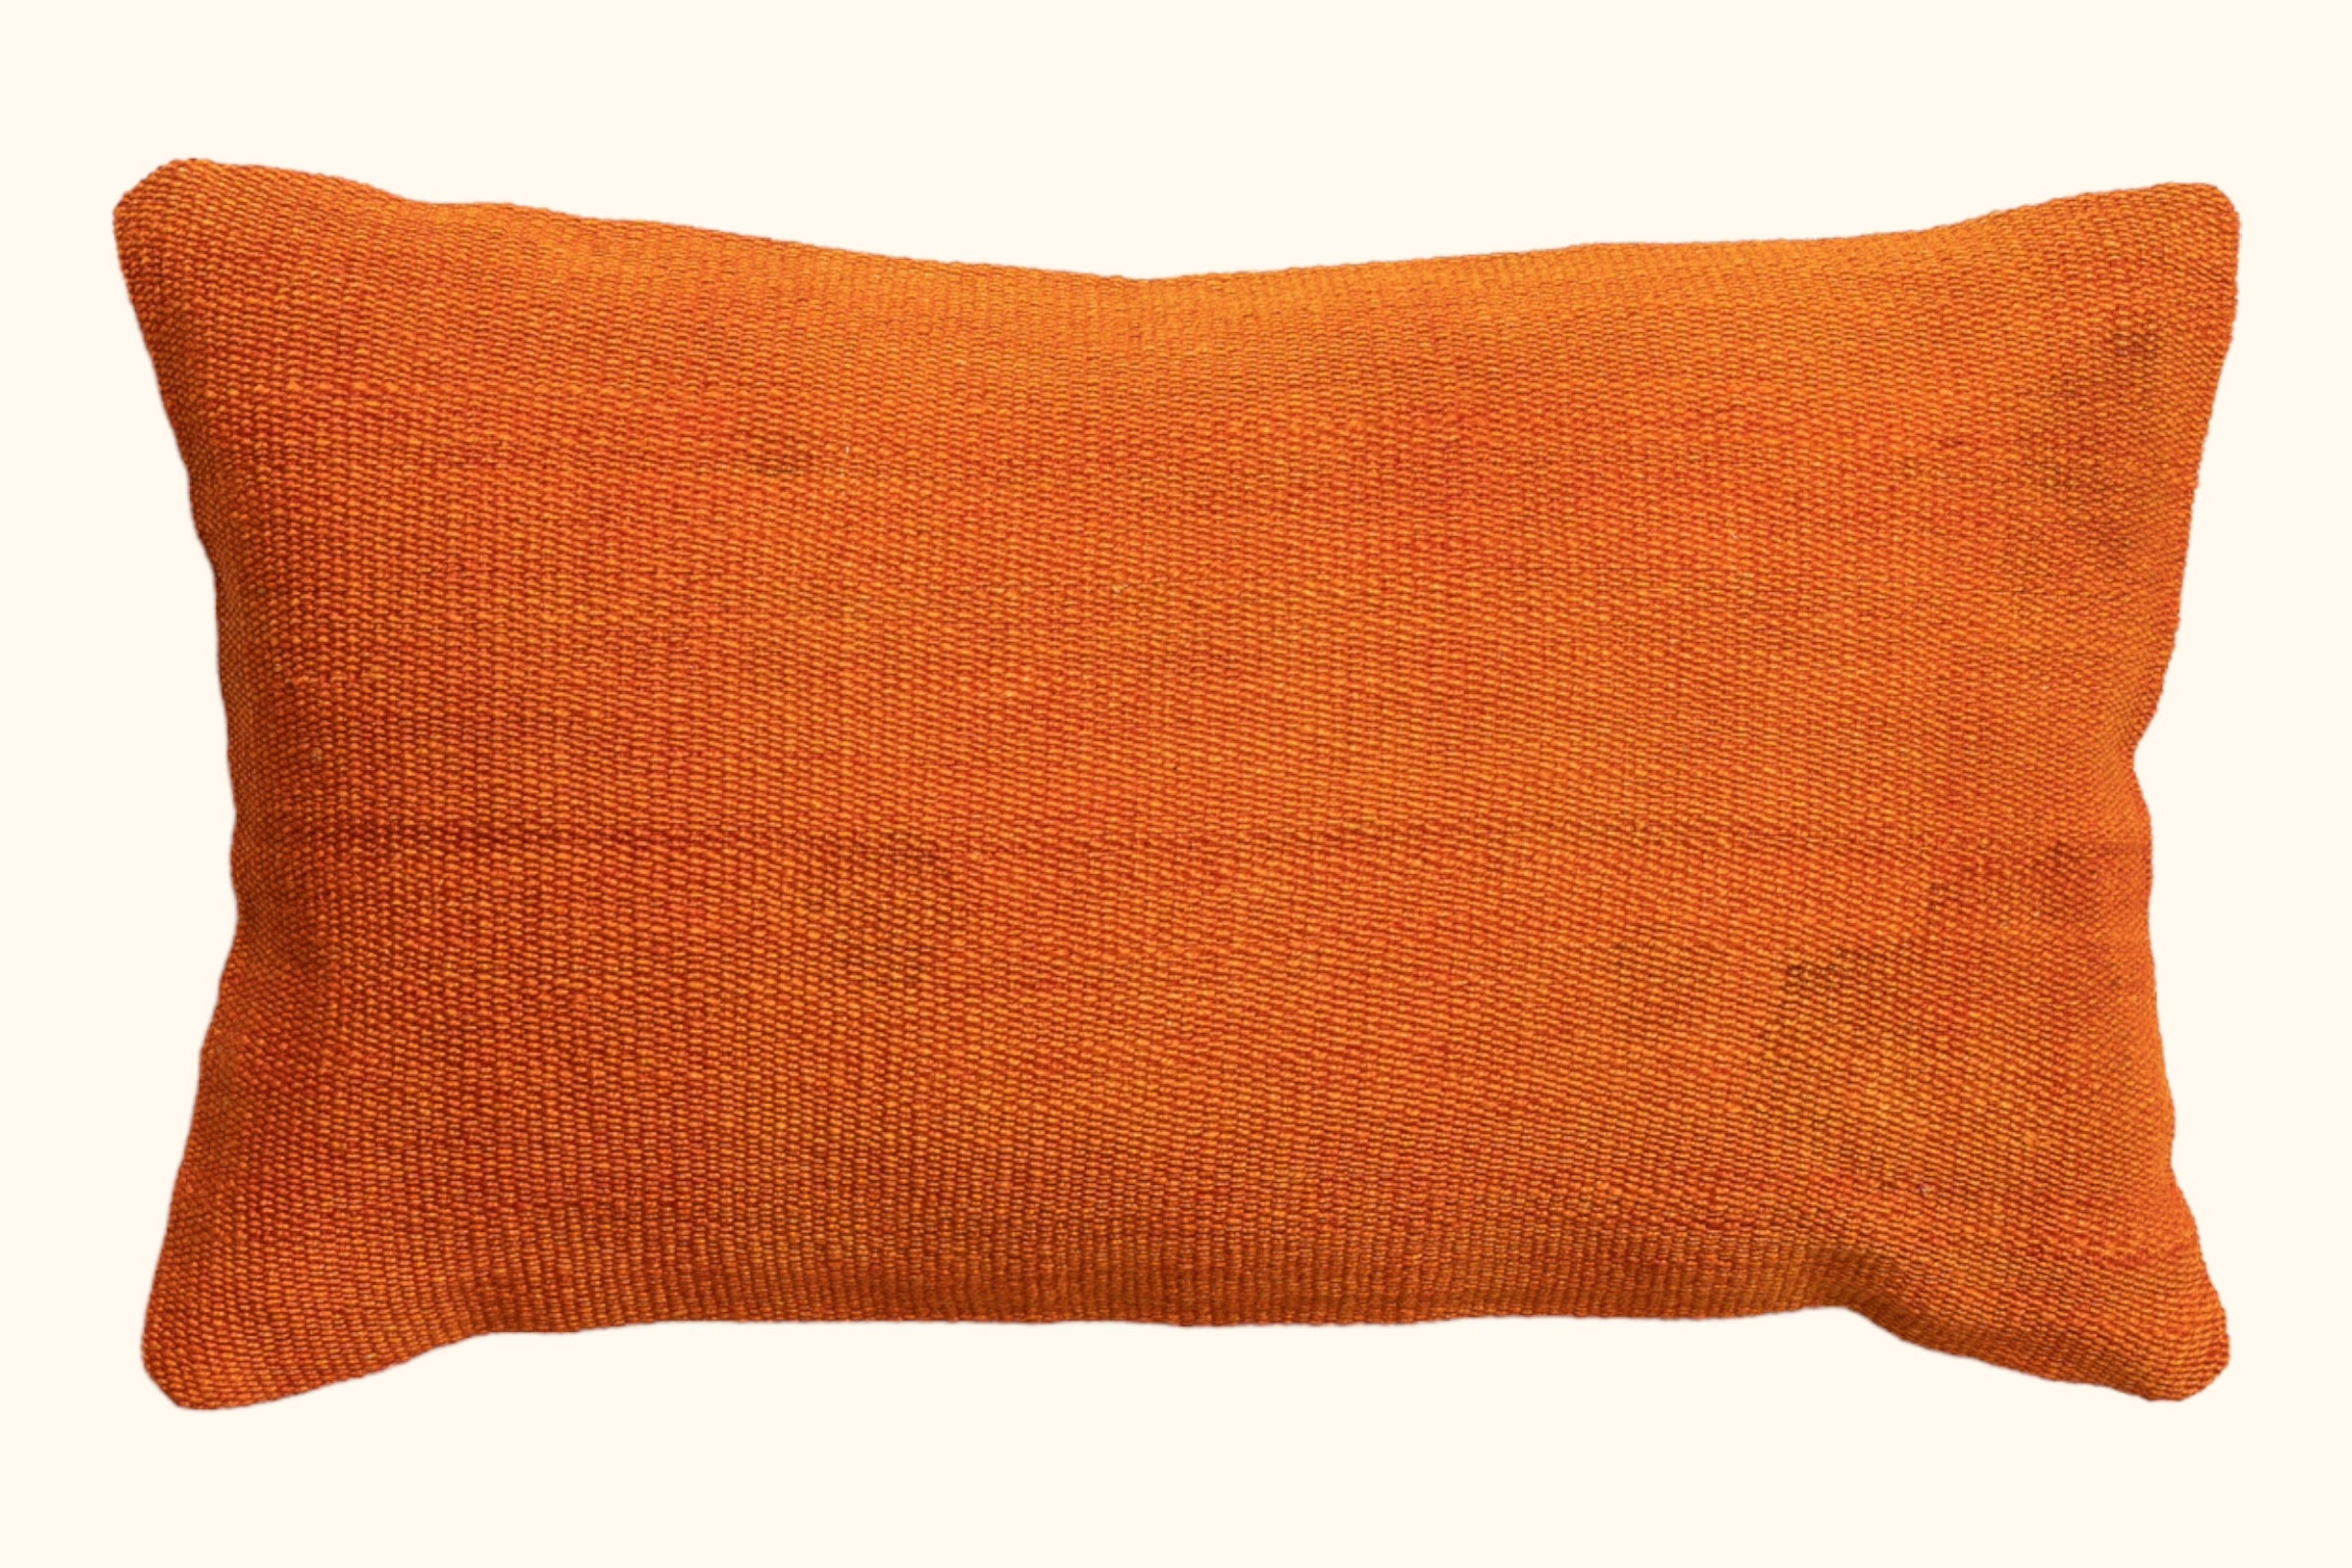 Kilim cushion Adife 50x30cm